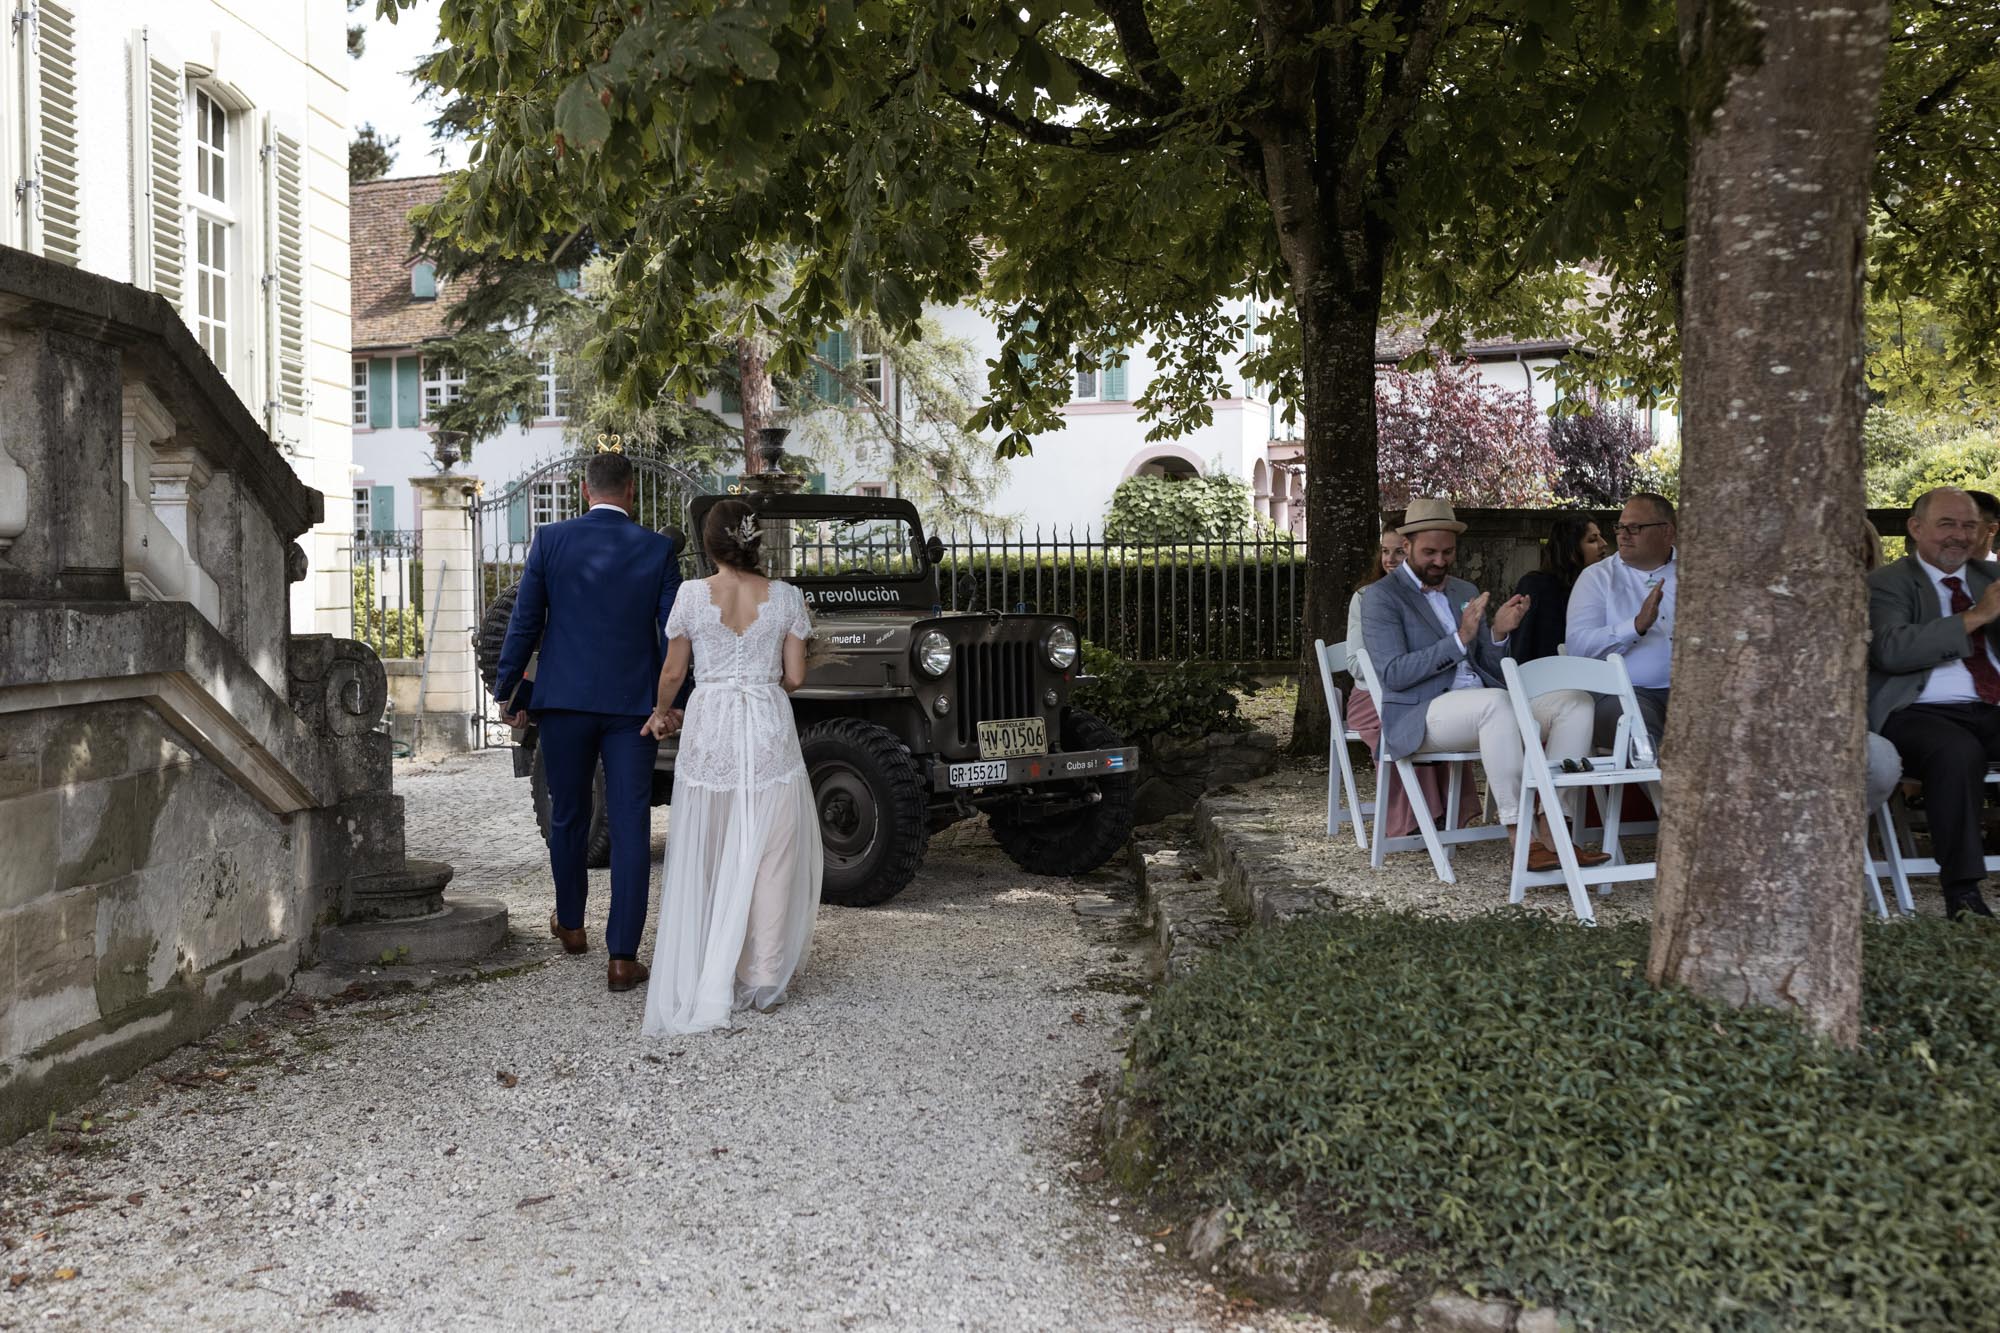 Freie Trauung Villa Wenkenhof - Der Auszug des Paares - Hochzeitsfotografen Basel